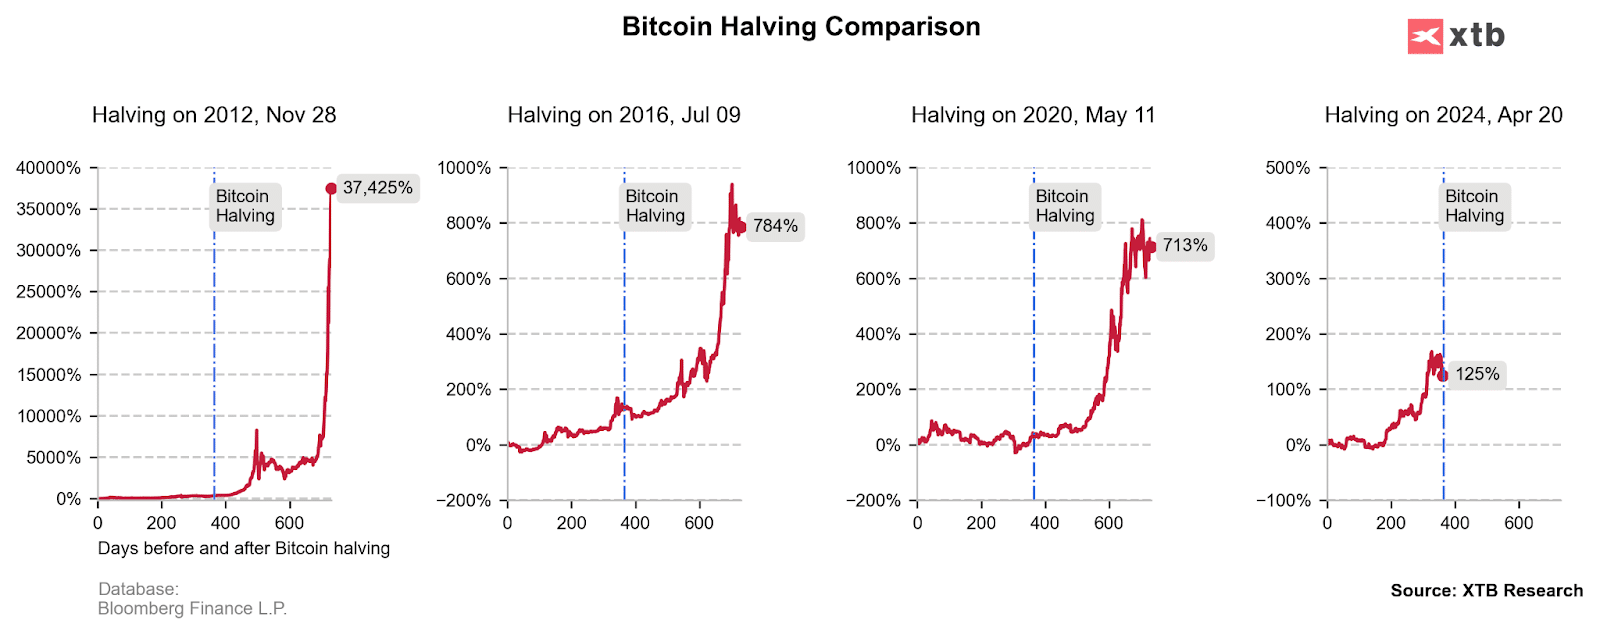 Bitcoin Halving Comparison